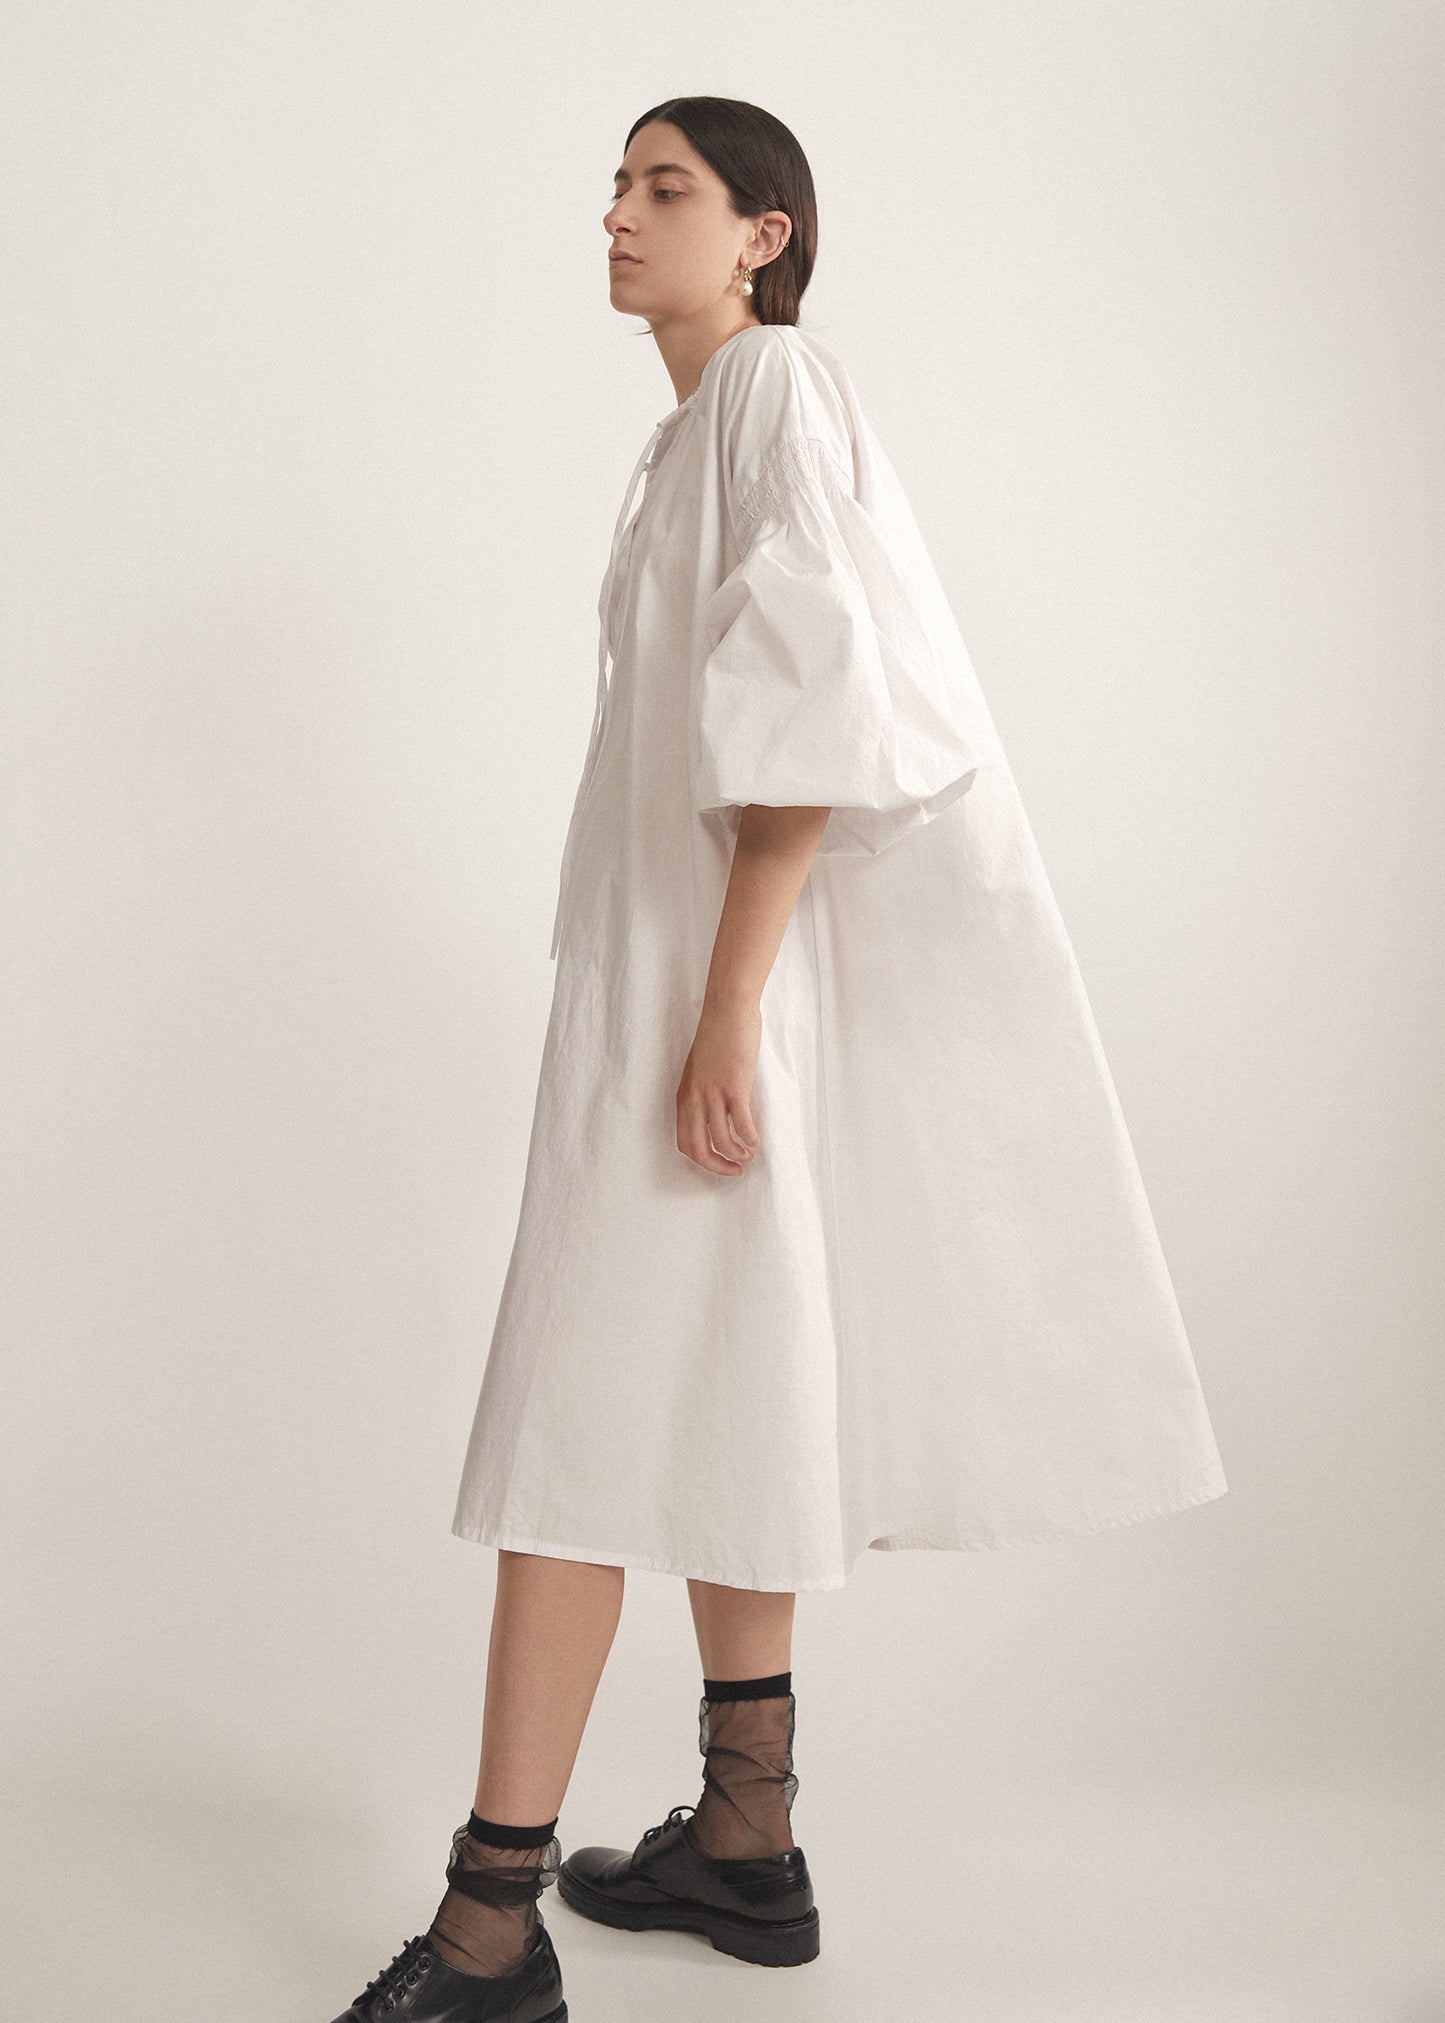 Aurelian Dress, White